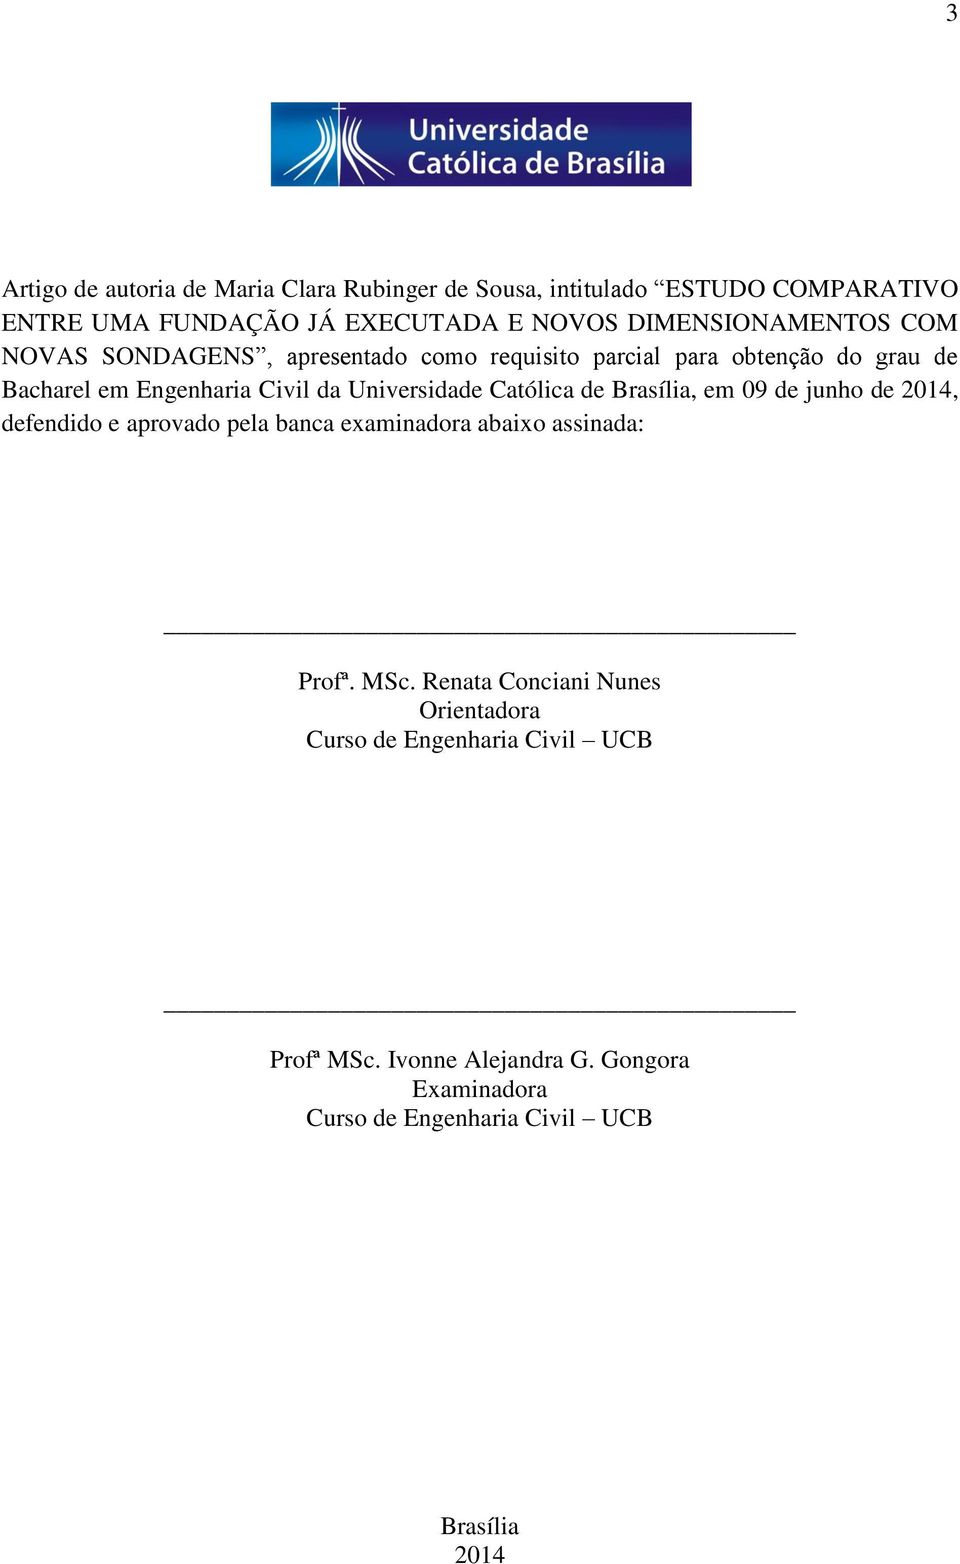 Universidade Católica de Brasília, em 09 de junho de 2014, defendido e aprovado pela banca examinadora abaixo assinada: Profª. MSc.